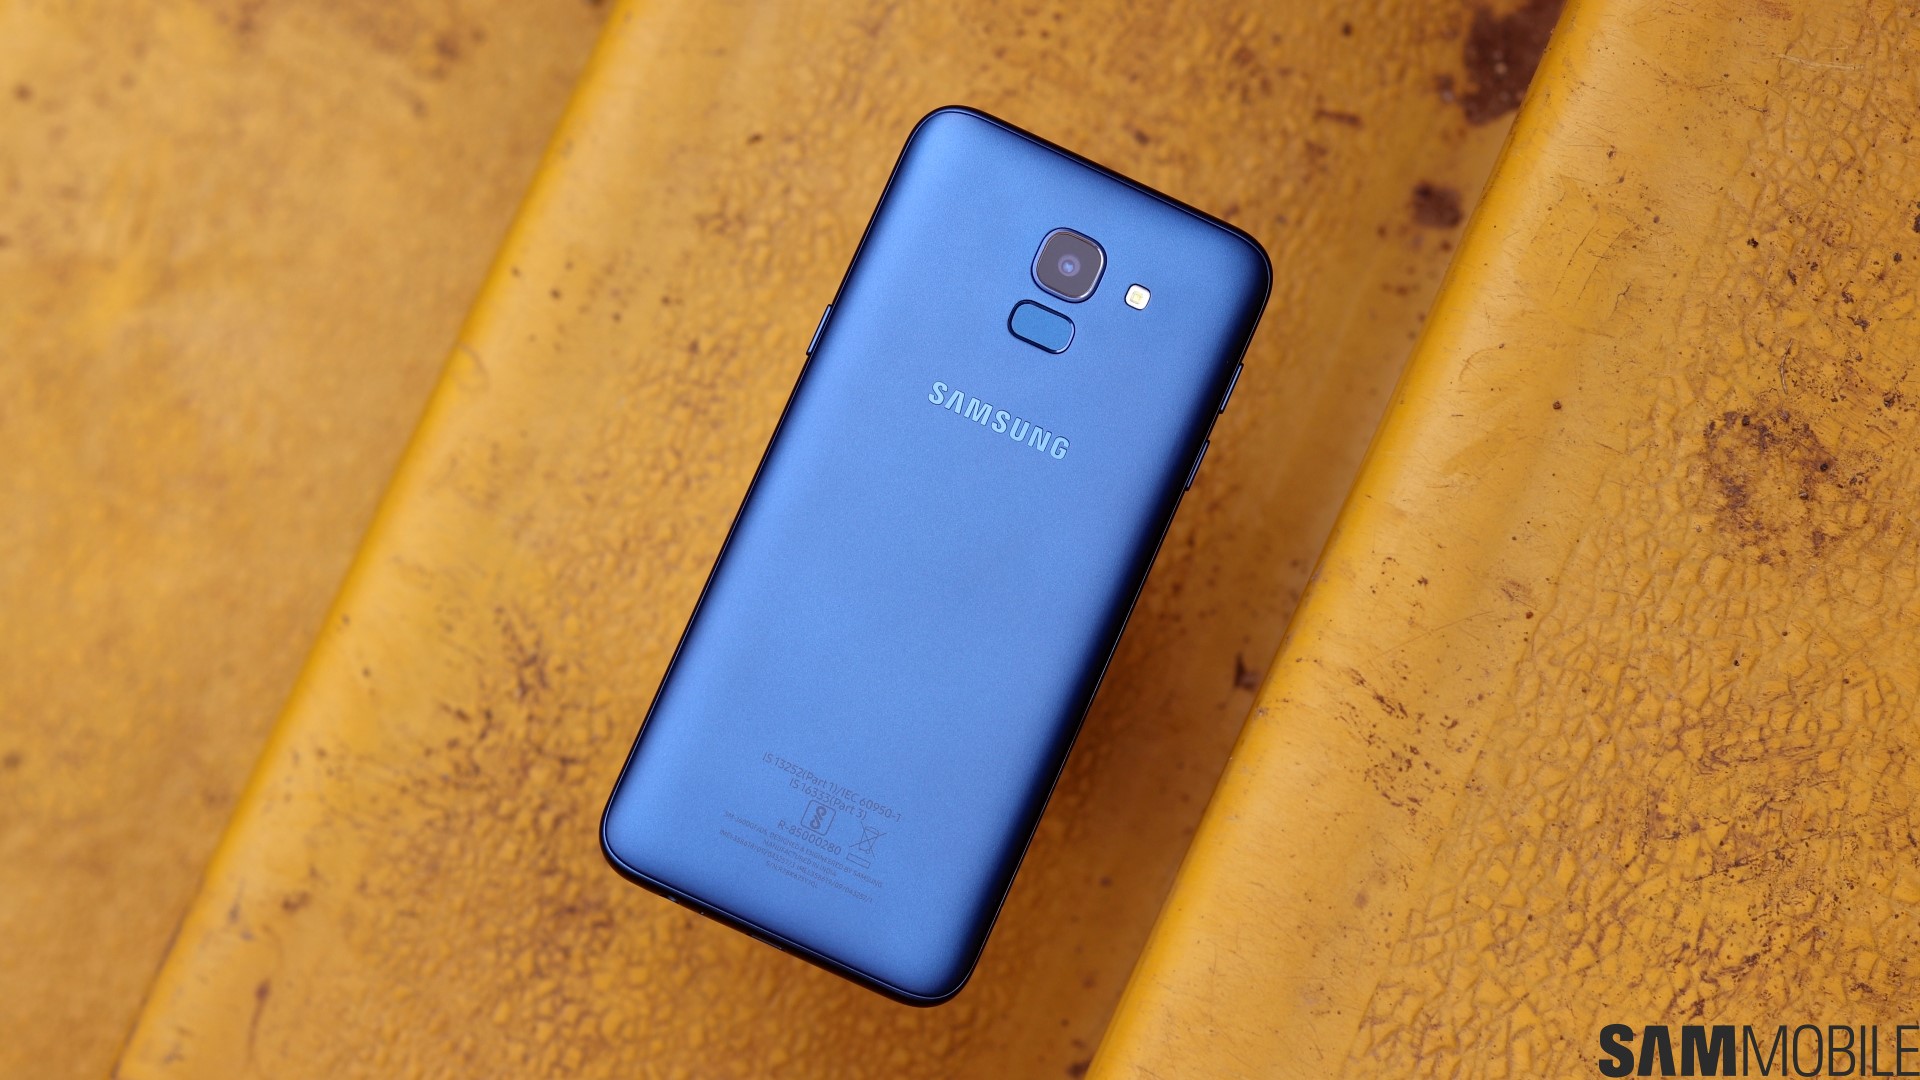 Thích mê công nghệ mới? Hãy xem hình ảnh về Samsung Galaxy J4 Prime và J6 Prime ngay thôi! Đẹp và kỹ thuật cao cấp đang chờ đón bạn.